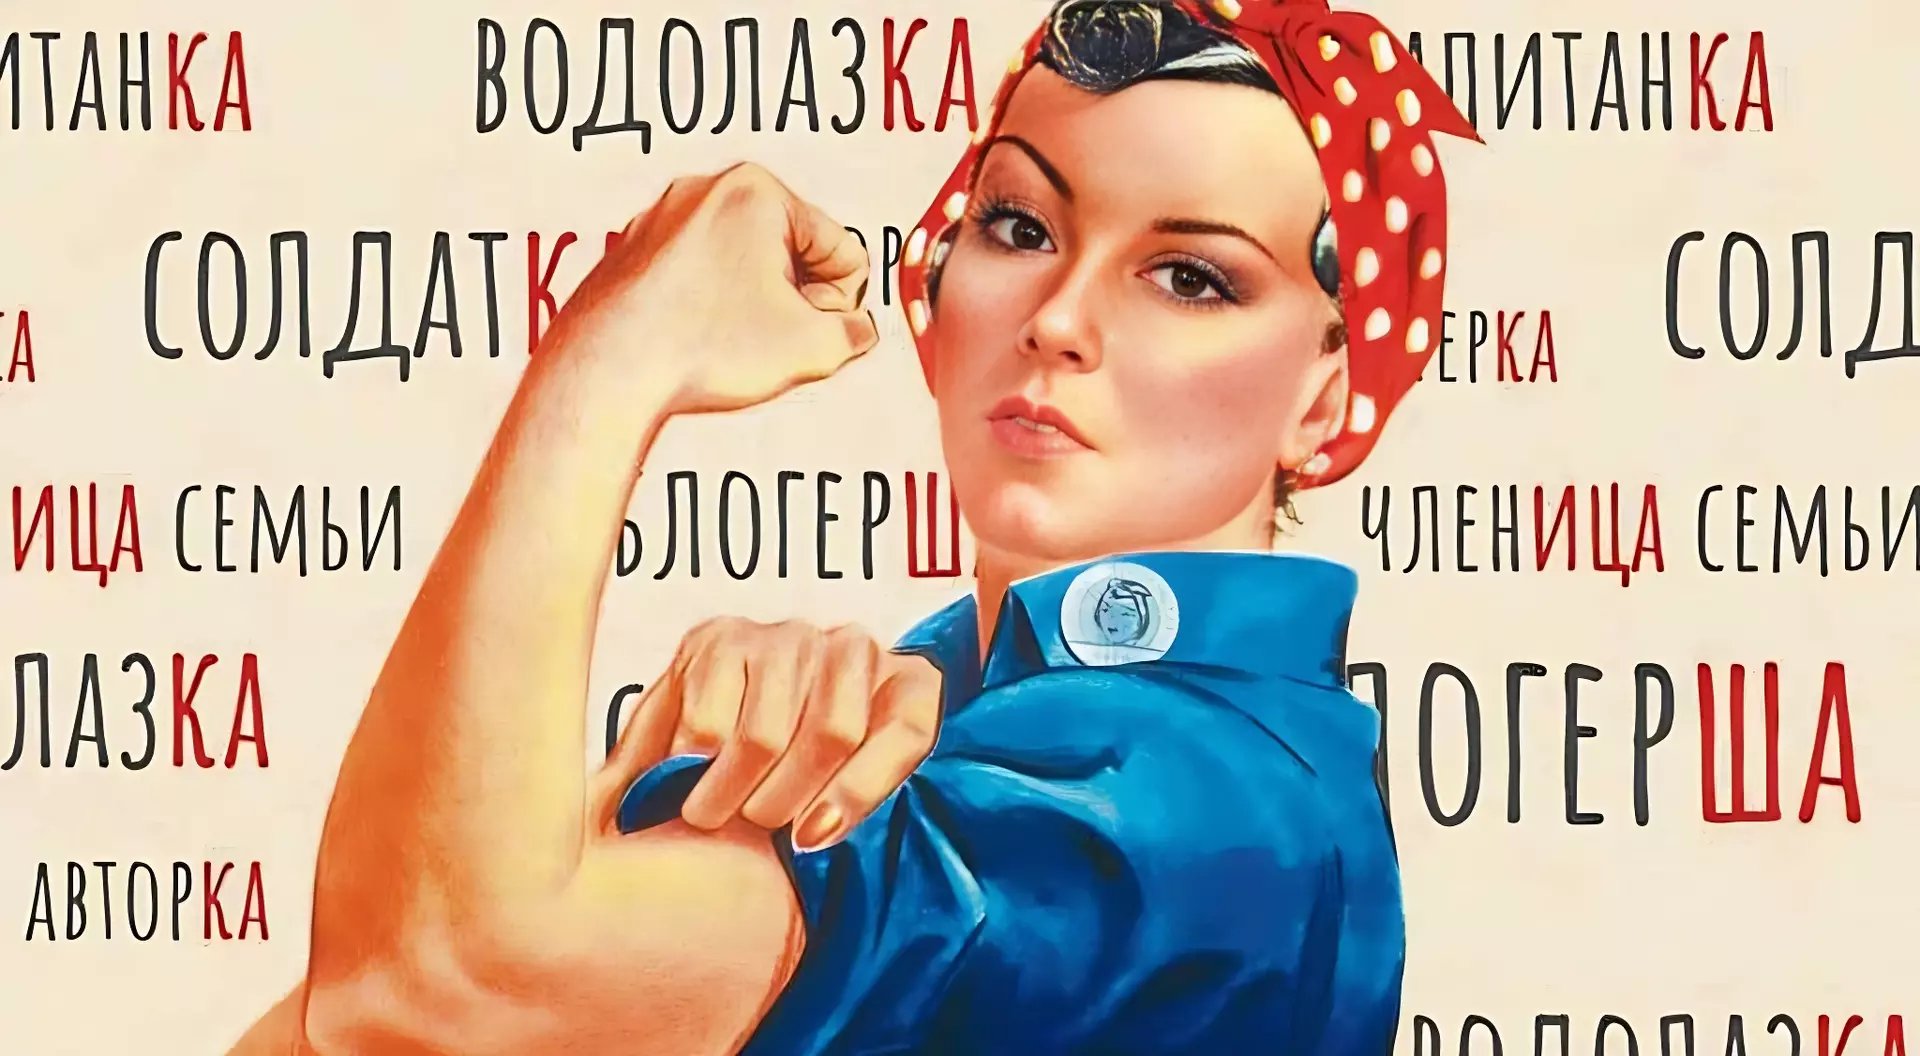 Феминитивы какие. Феминитивы. Феминитивы картинки. Феминитивы на советских плакатах. Феминитивы примеры.